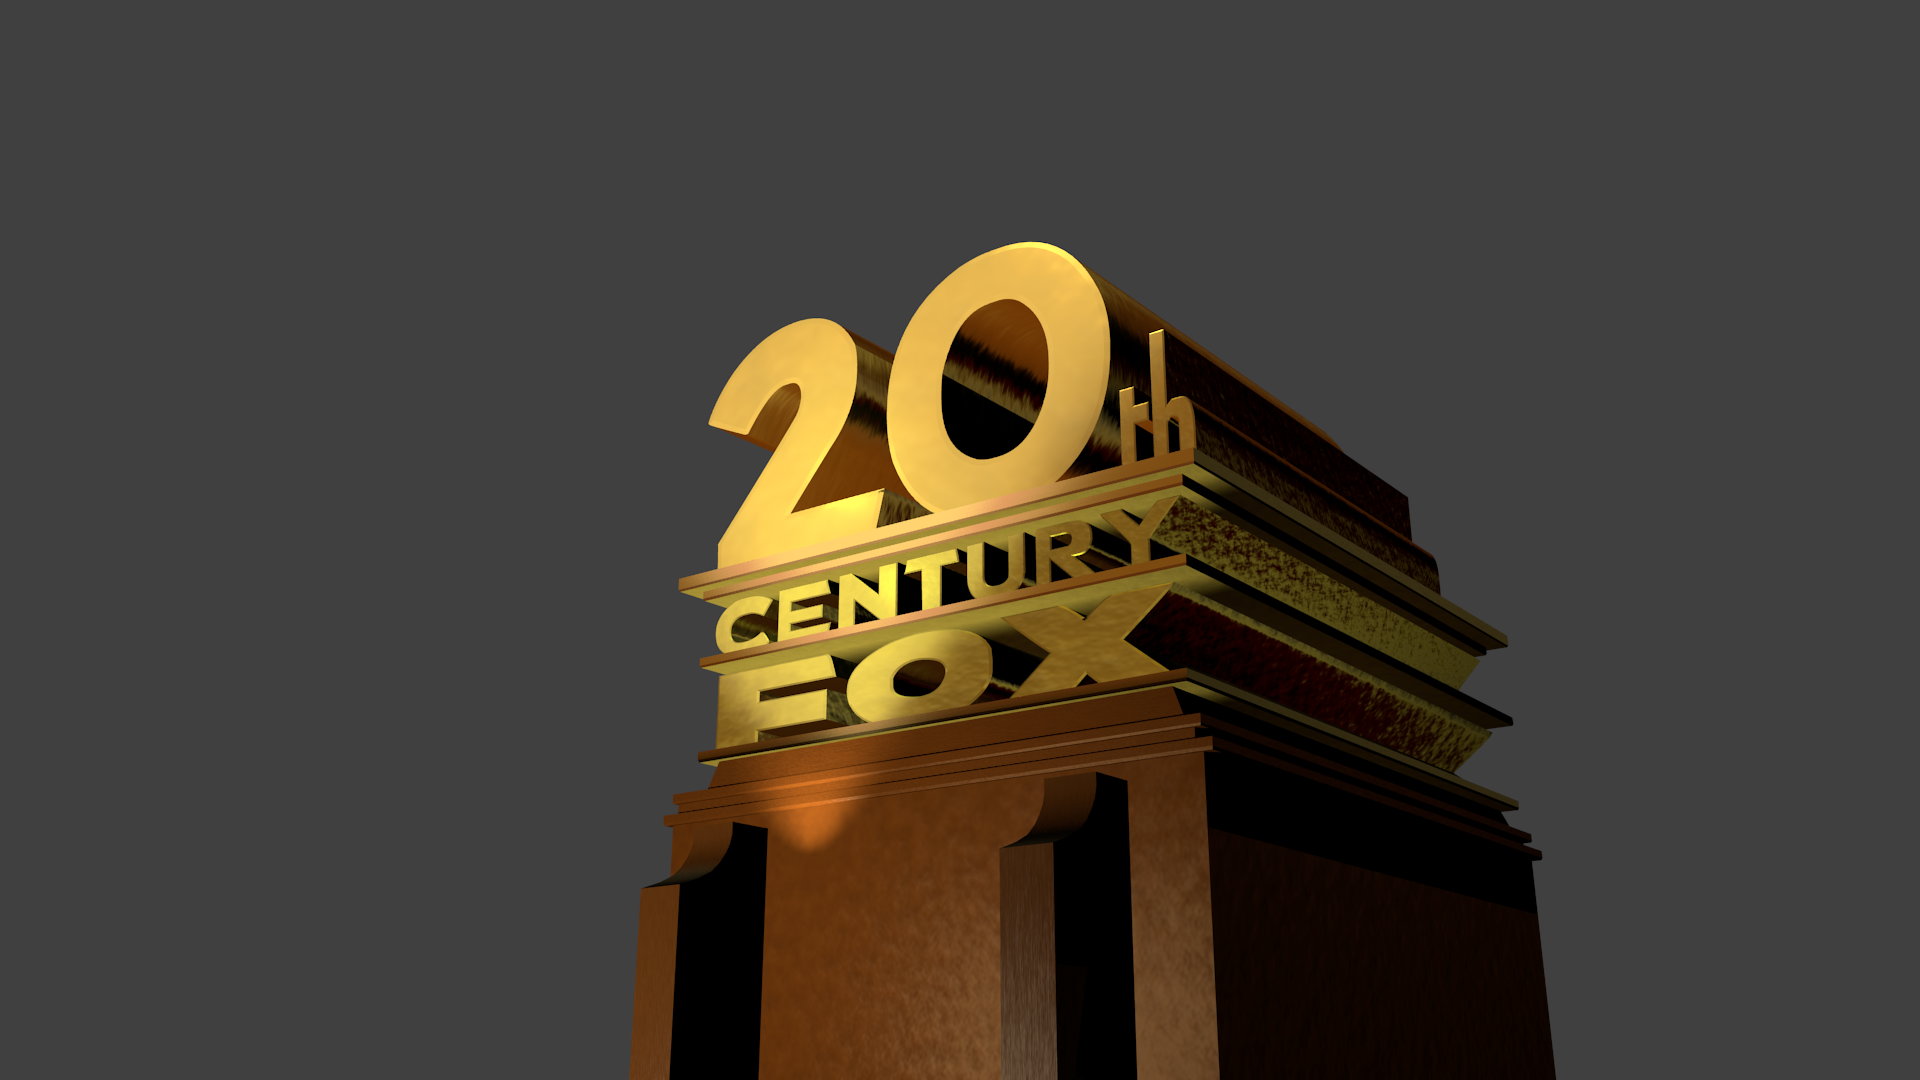 20th Century Fox Logo Wallpaper